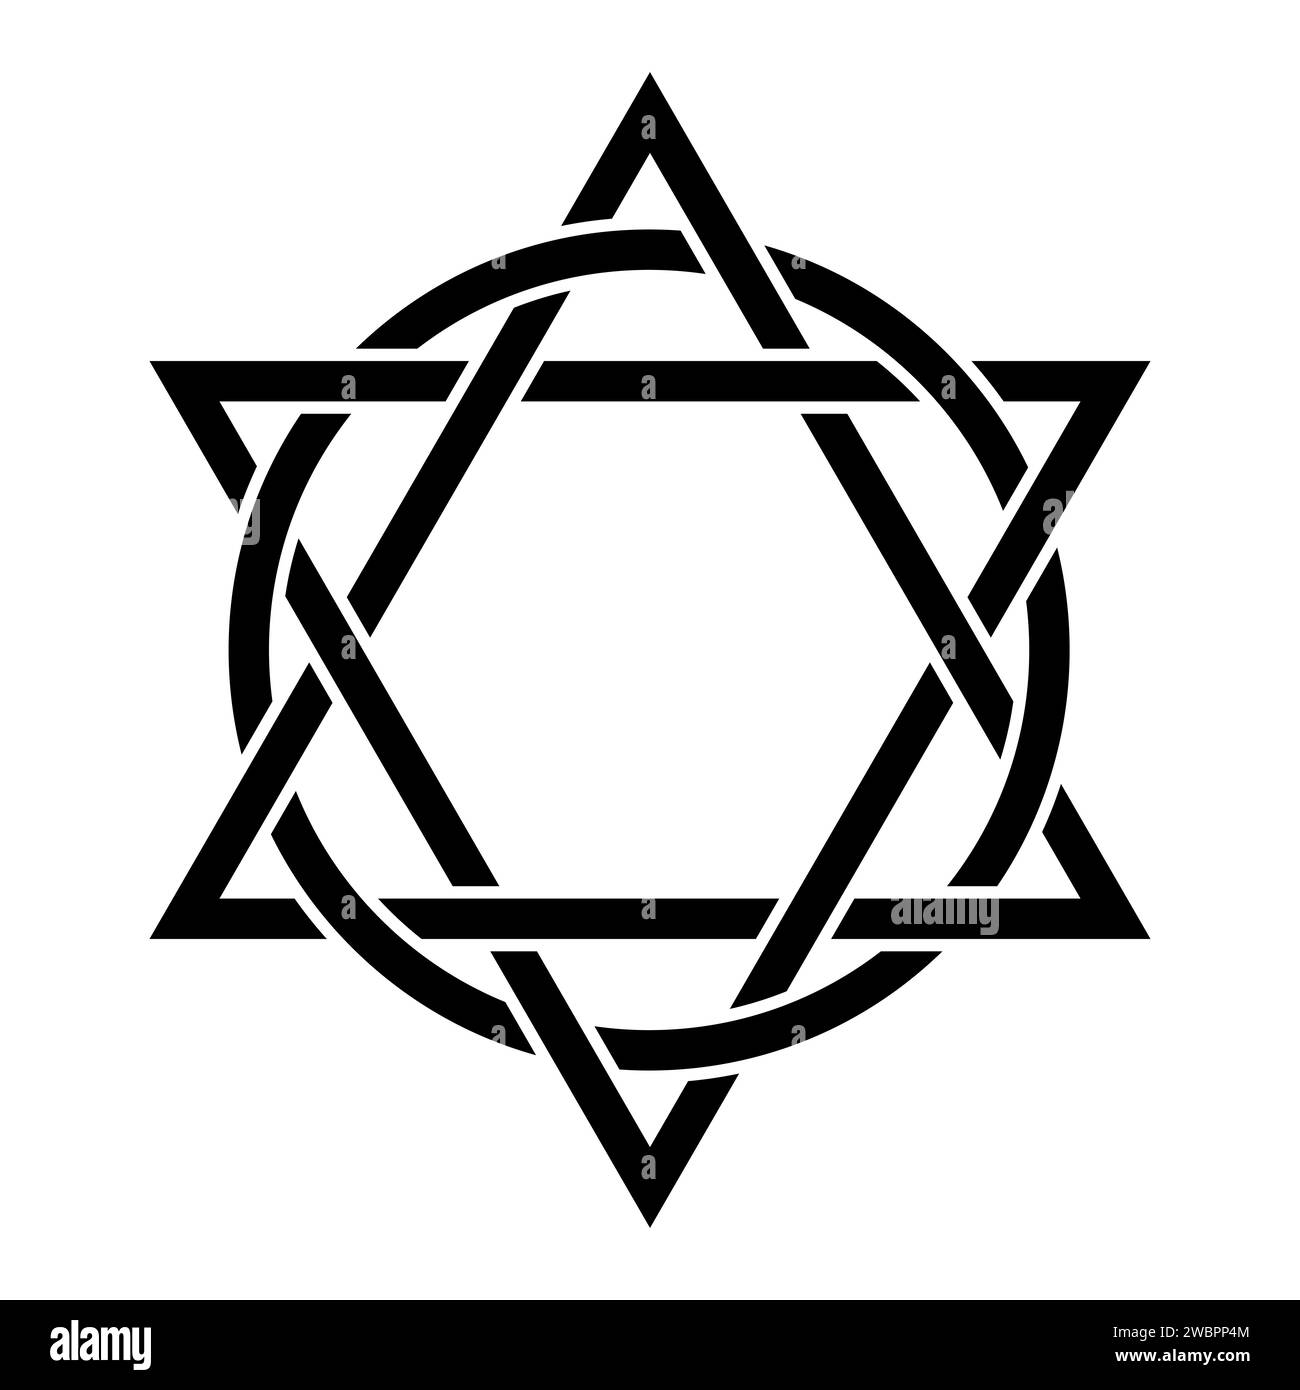 Symbole d'un hexagramme avec des cercles entrelacés. Deux triangles entrelacés avec un cercle. Emblème chrétien, représentant la Trinité. Banque D'Images